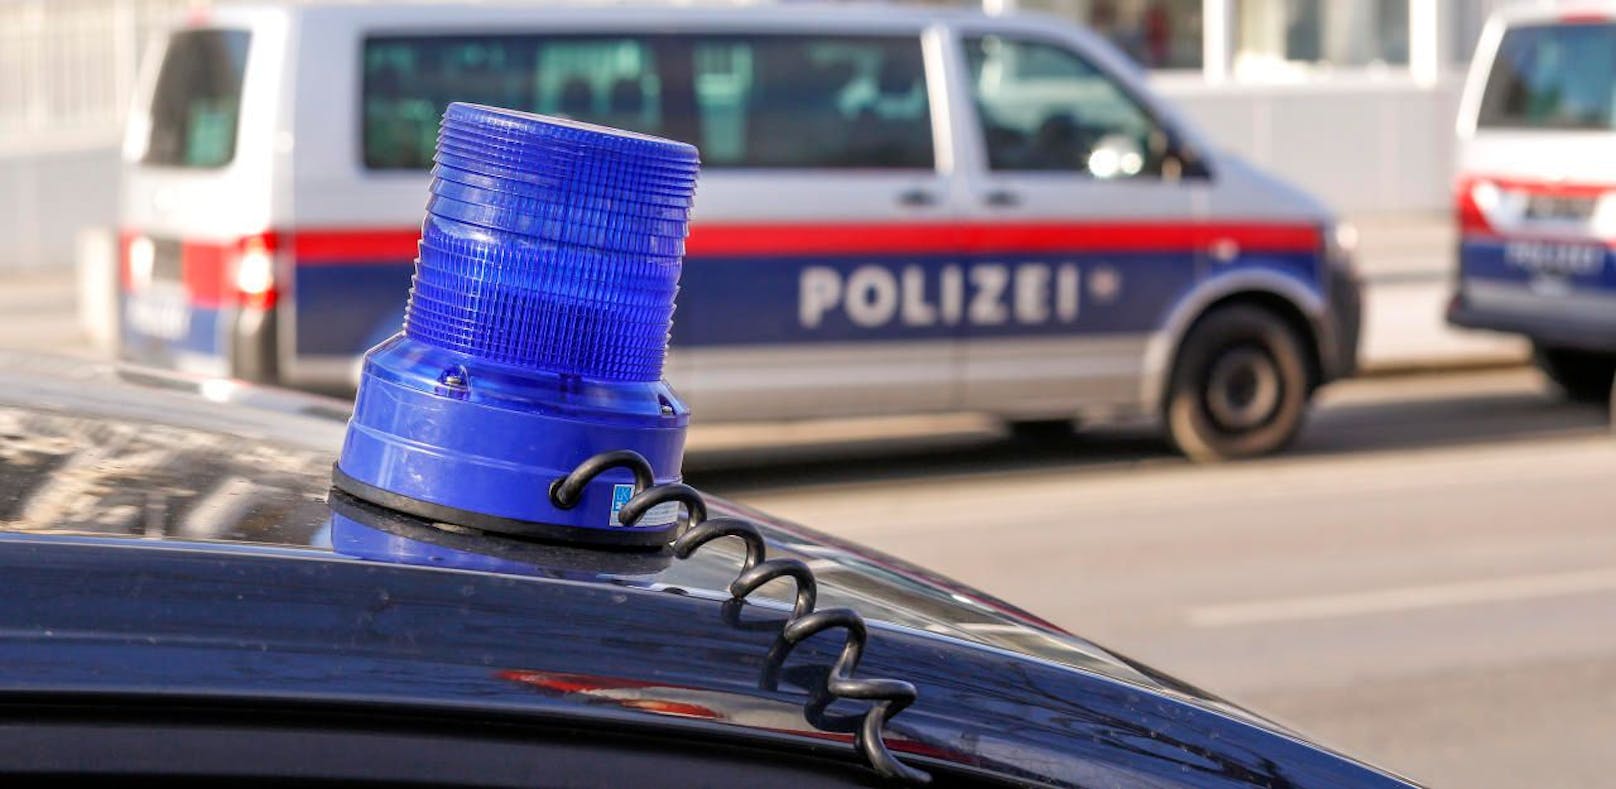 Eine Jugendbande verprügelte und beraubte einen 12-jährigen Salzburger, drohte ihm mit dem Abstechen. Die Polizei ermittelt. (Symbolfoto)